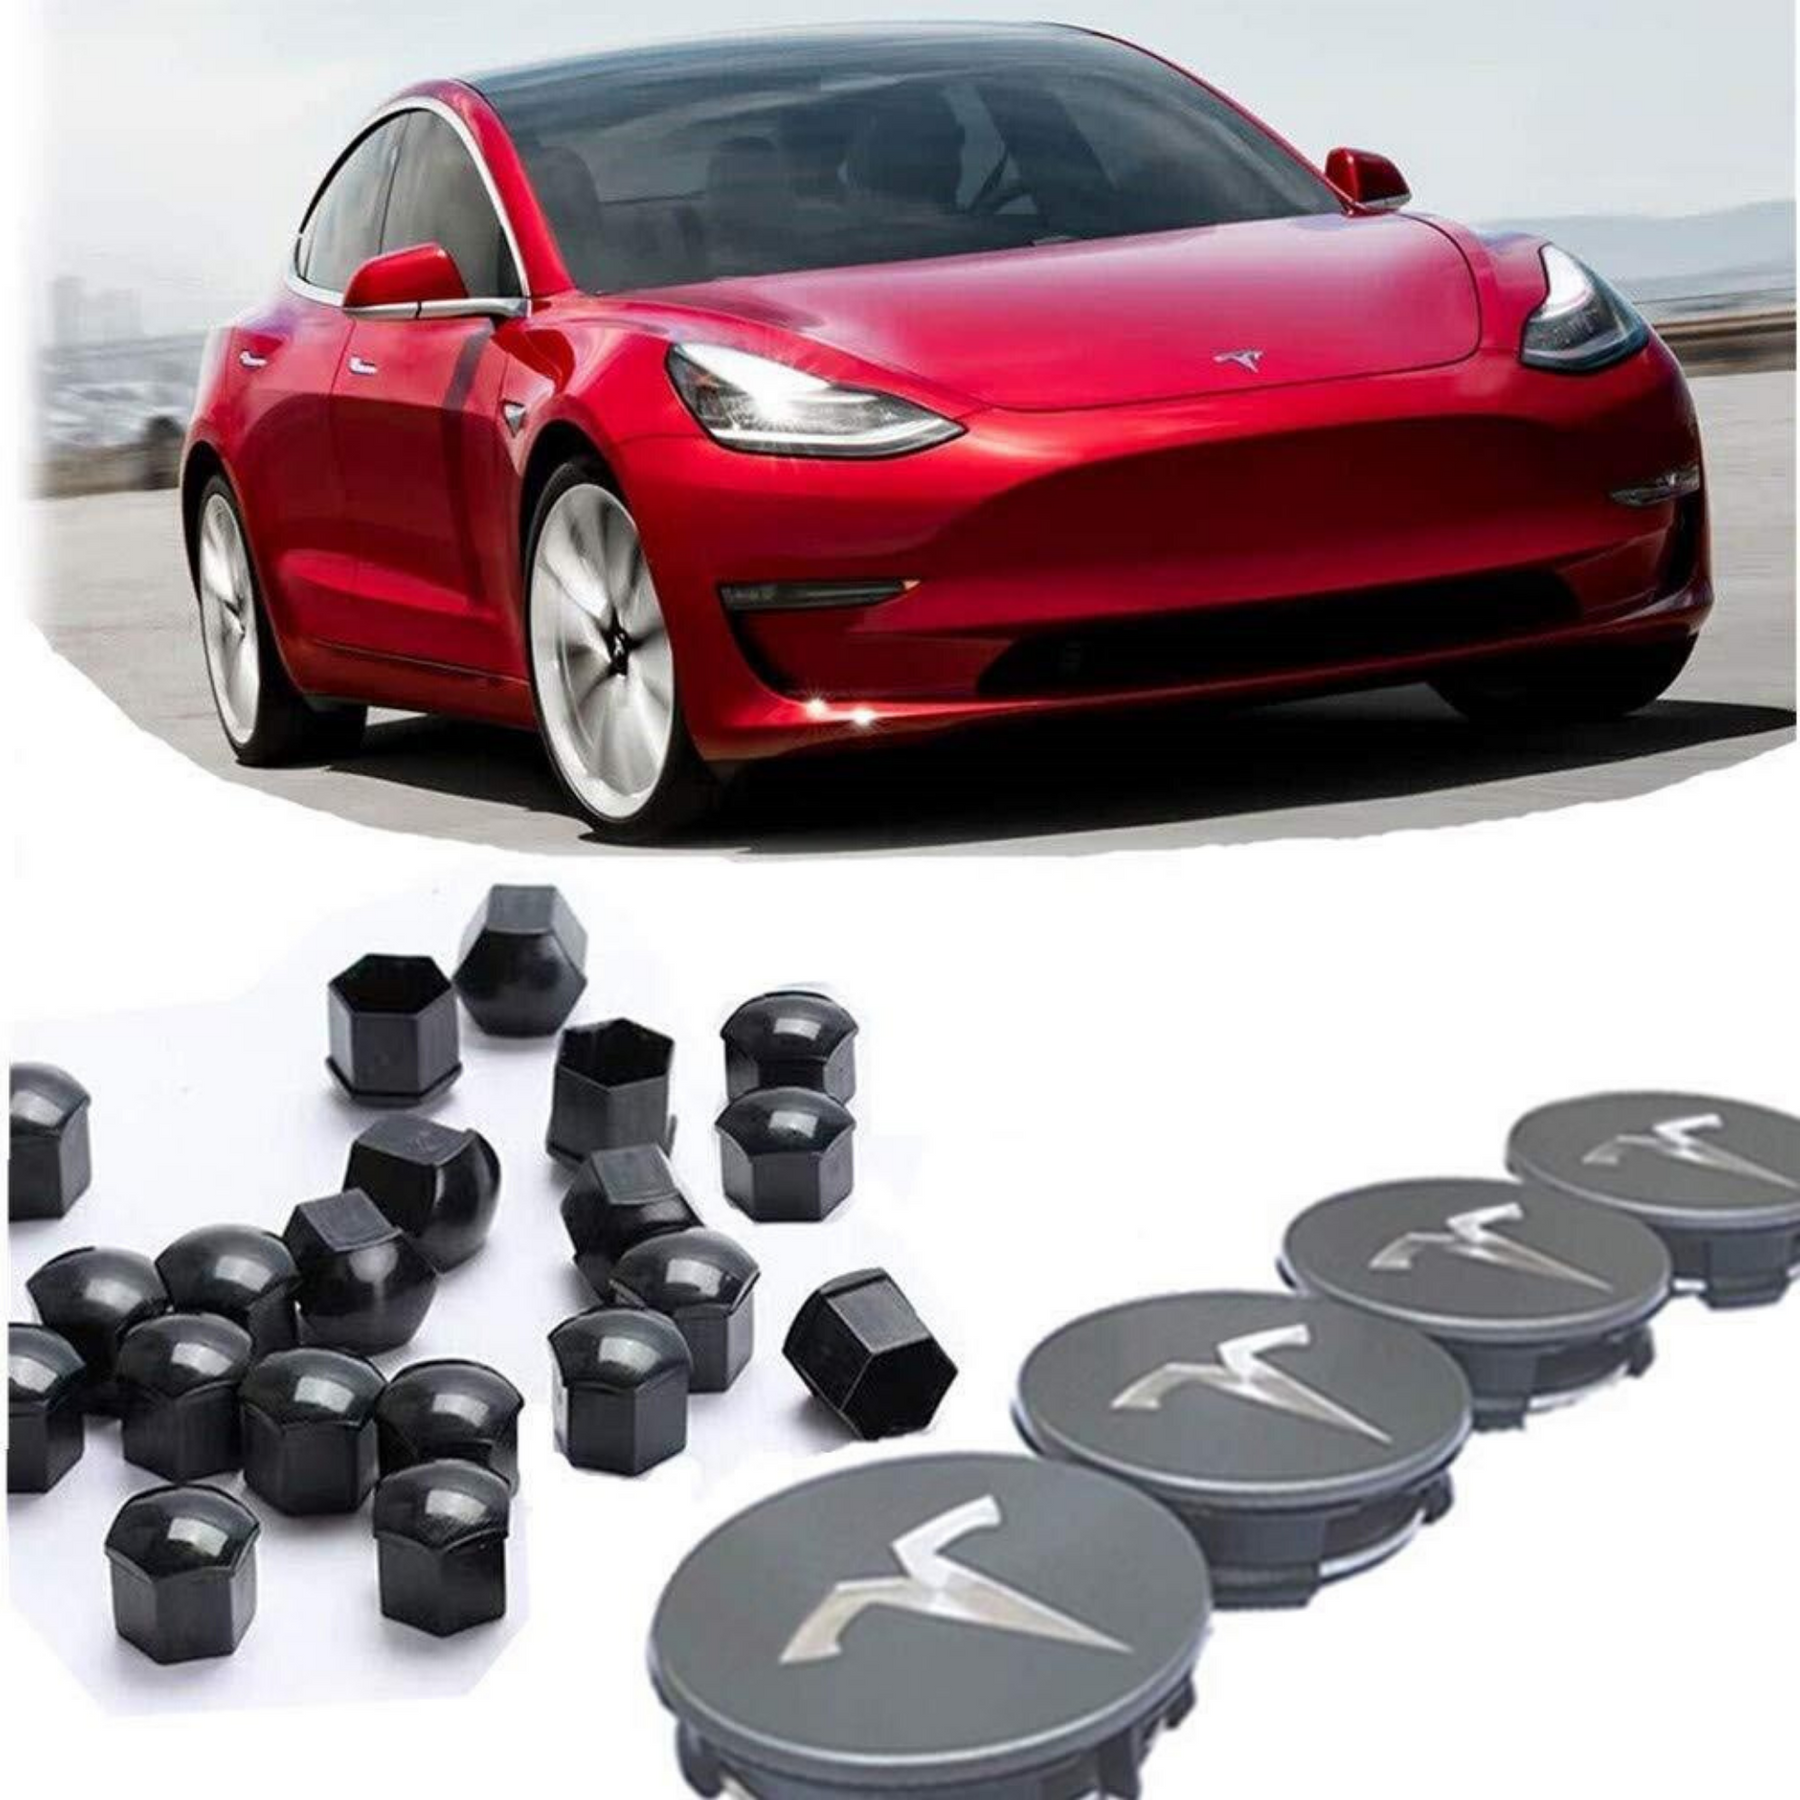 Radmitten-Nabenkappen für Tesla Model 3 / s / x mit Center Cap Set